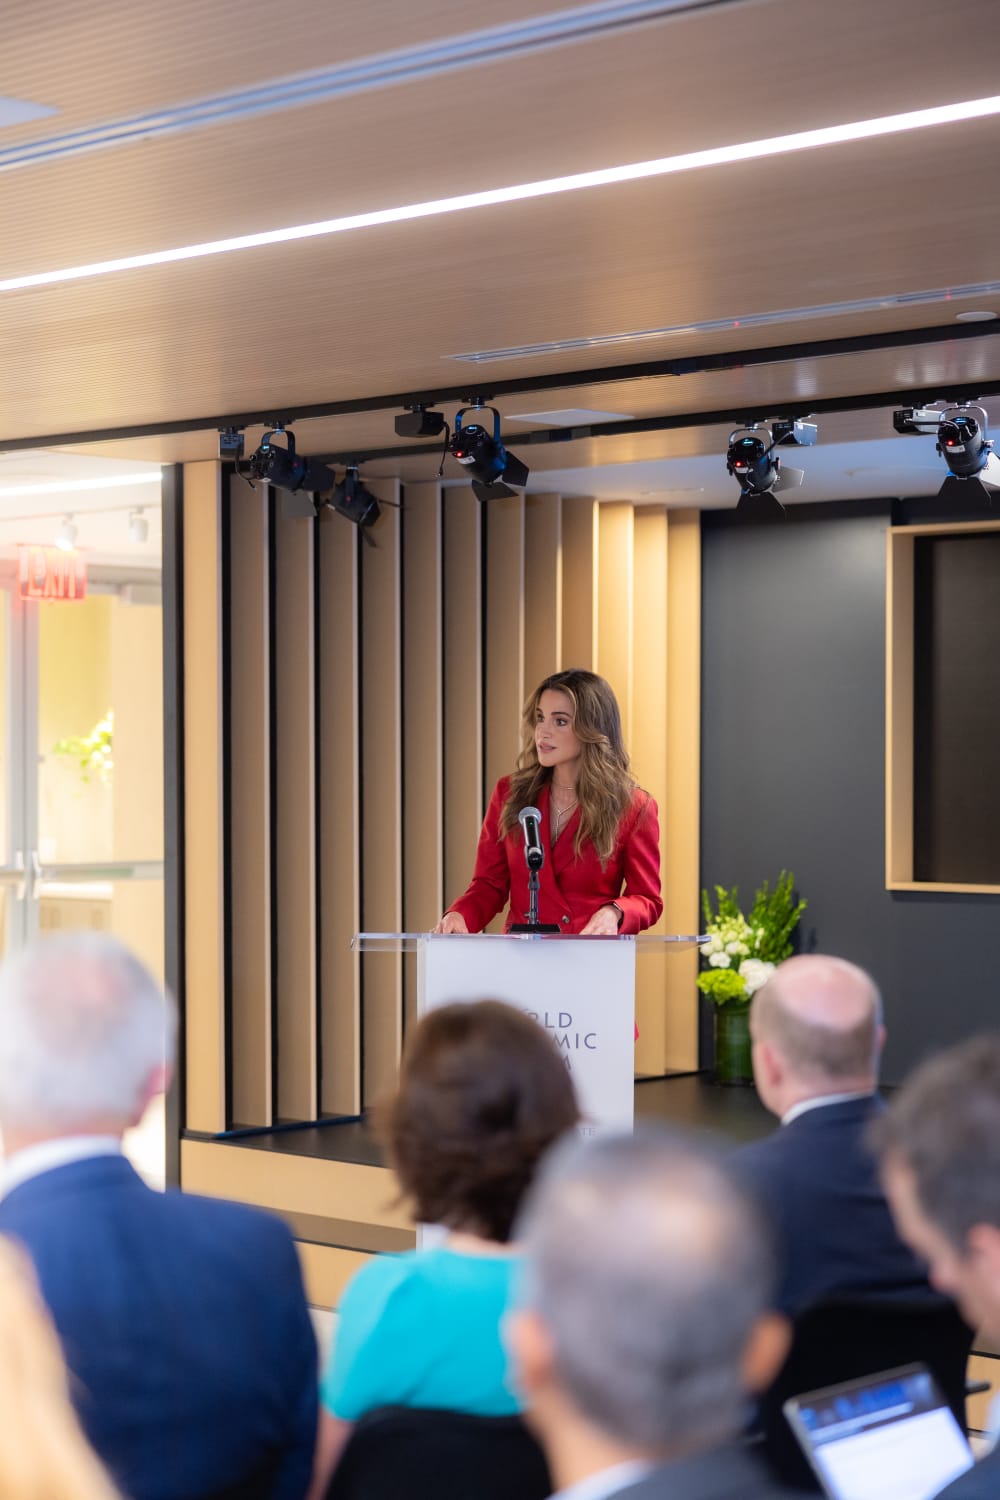 اختيار الملكة رانيا رئيساً عالمياً مشاركاً لمبادرة المنتدى الاقتصادي العالمي (العطاء لتعظيم العمل من أجل الأرض)